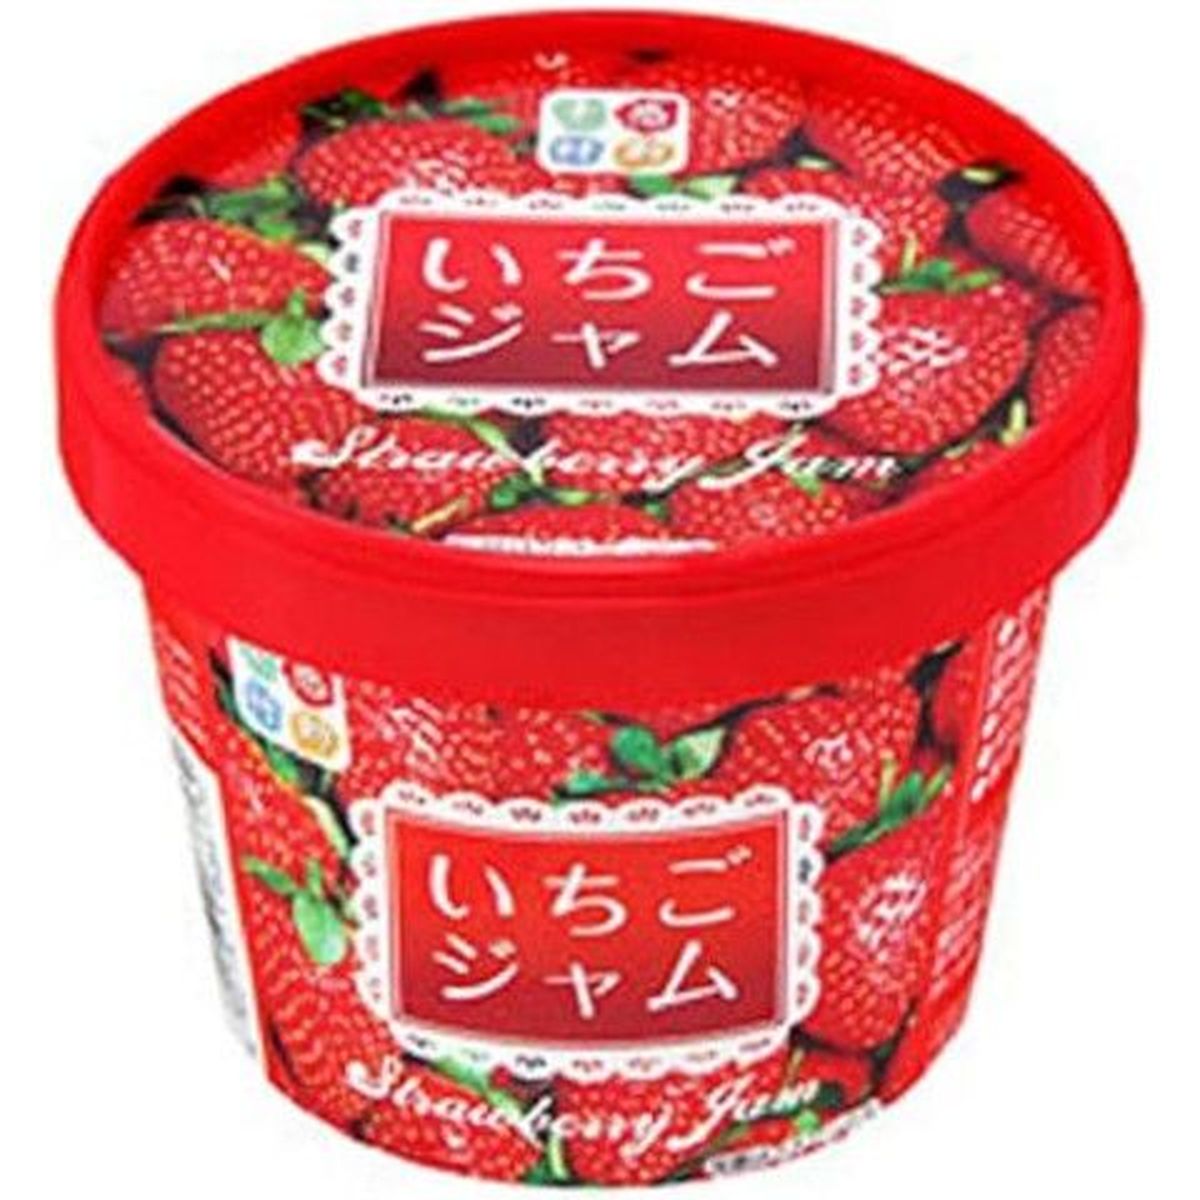 【12個入リ】スドー 感動素材 イチゴジャム紙カップ 120g